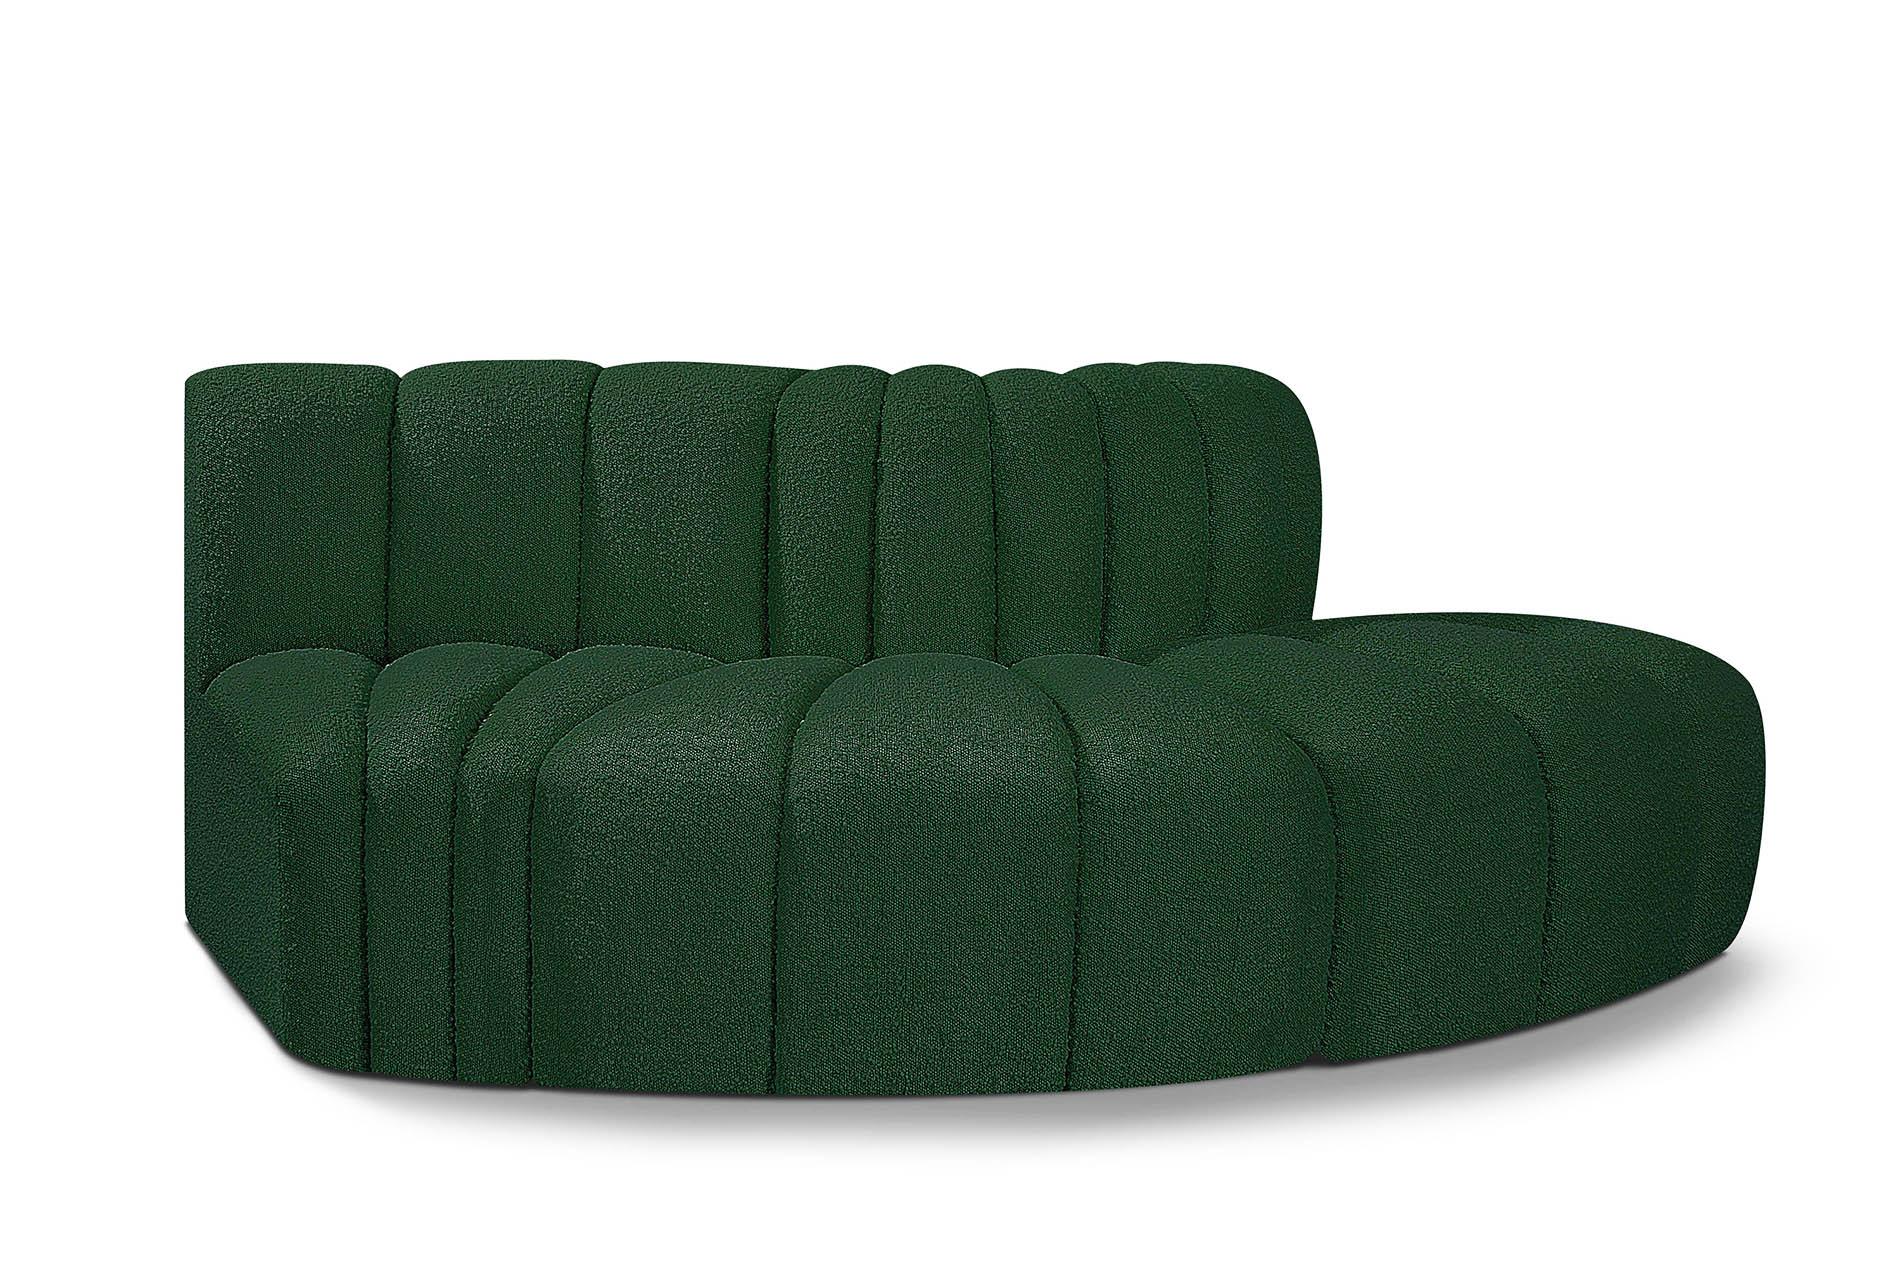 Contemporary, Modern Modular Sectional Sofa ARC 102Green-S3E 102Green-S3E in Green 